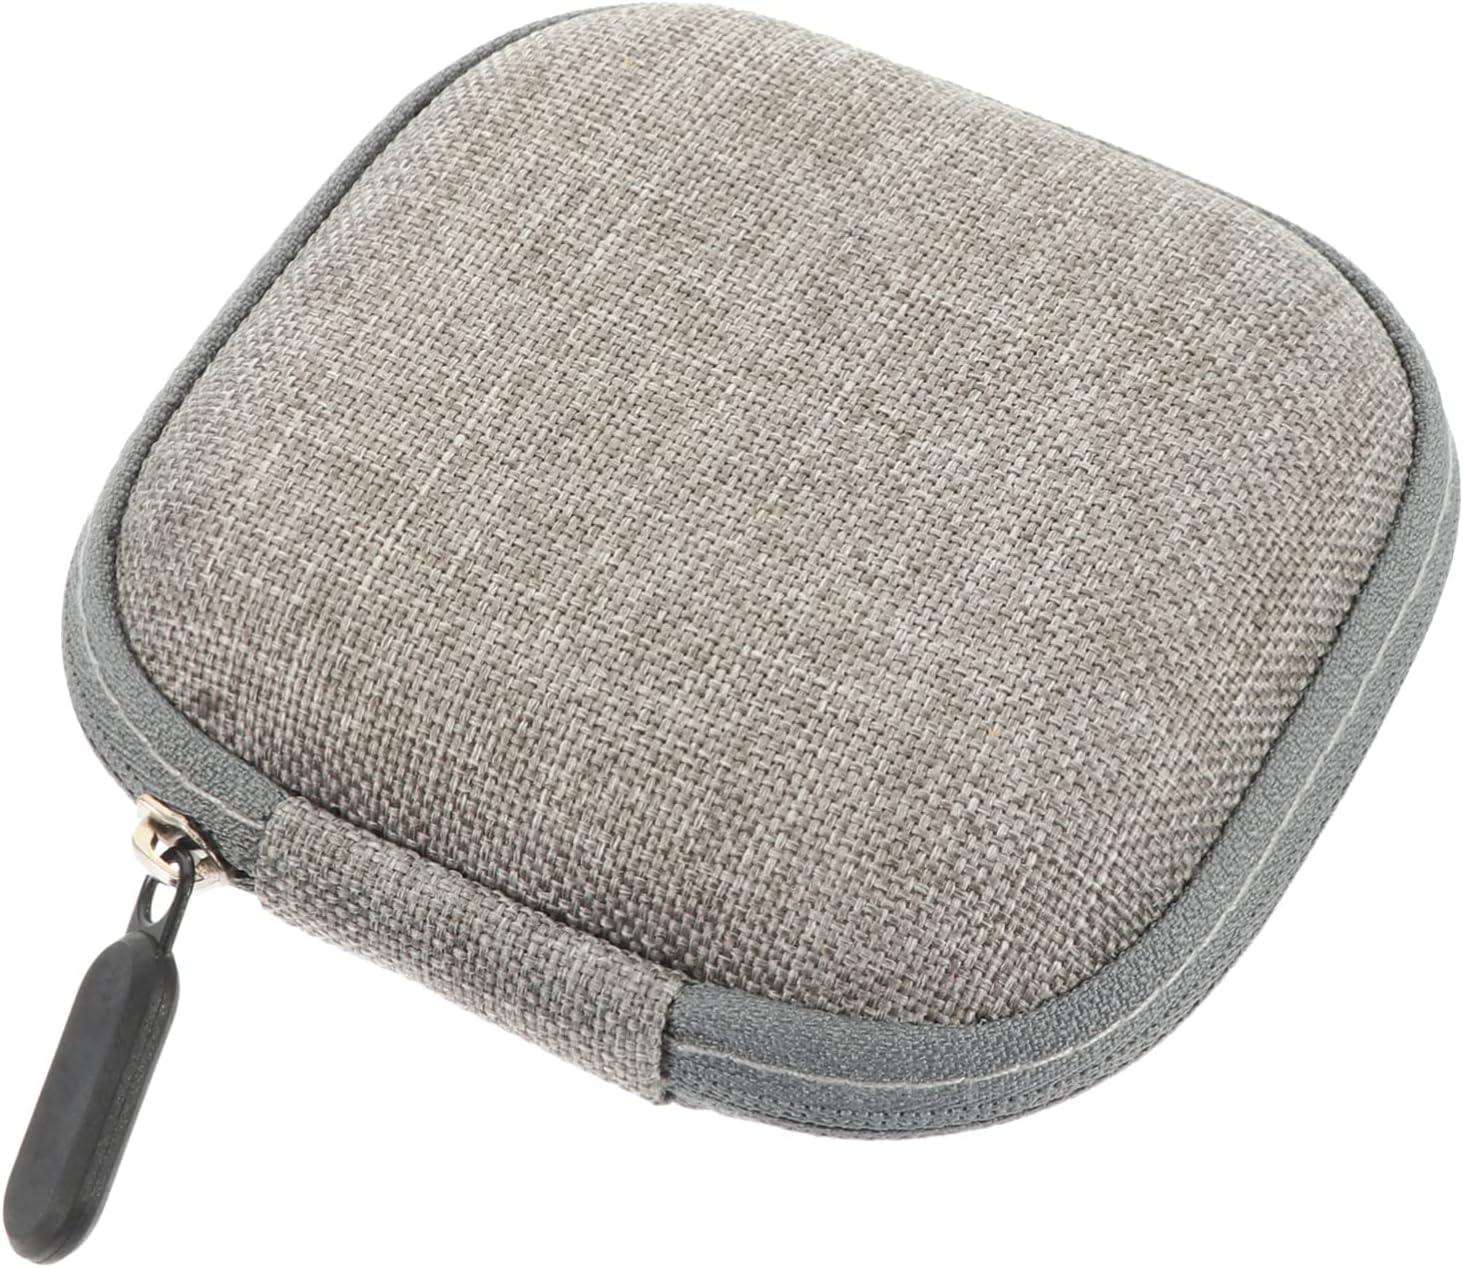 ຖົງເກັບຮັກສາອຸປະກອນການເດີນທາງ Bag Travel Storage Bag Small Change Purse Earbuds Carrying Case Bag Case Earbuds Pouch Bag Eva Grey Digital Accessory Bags Storage Case Bags